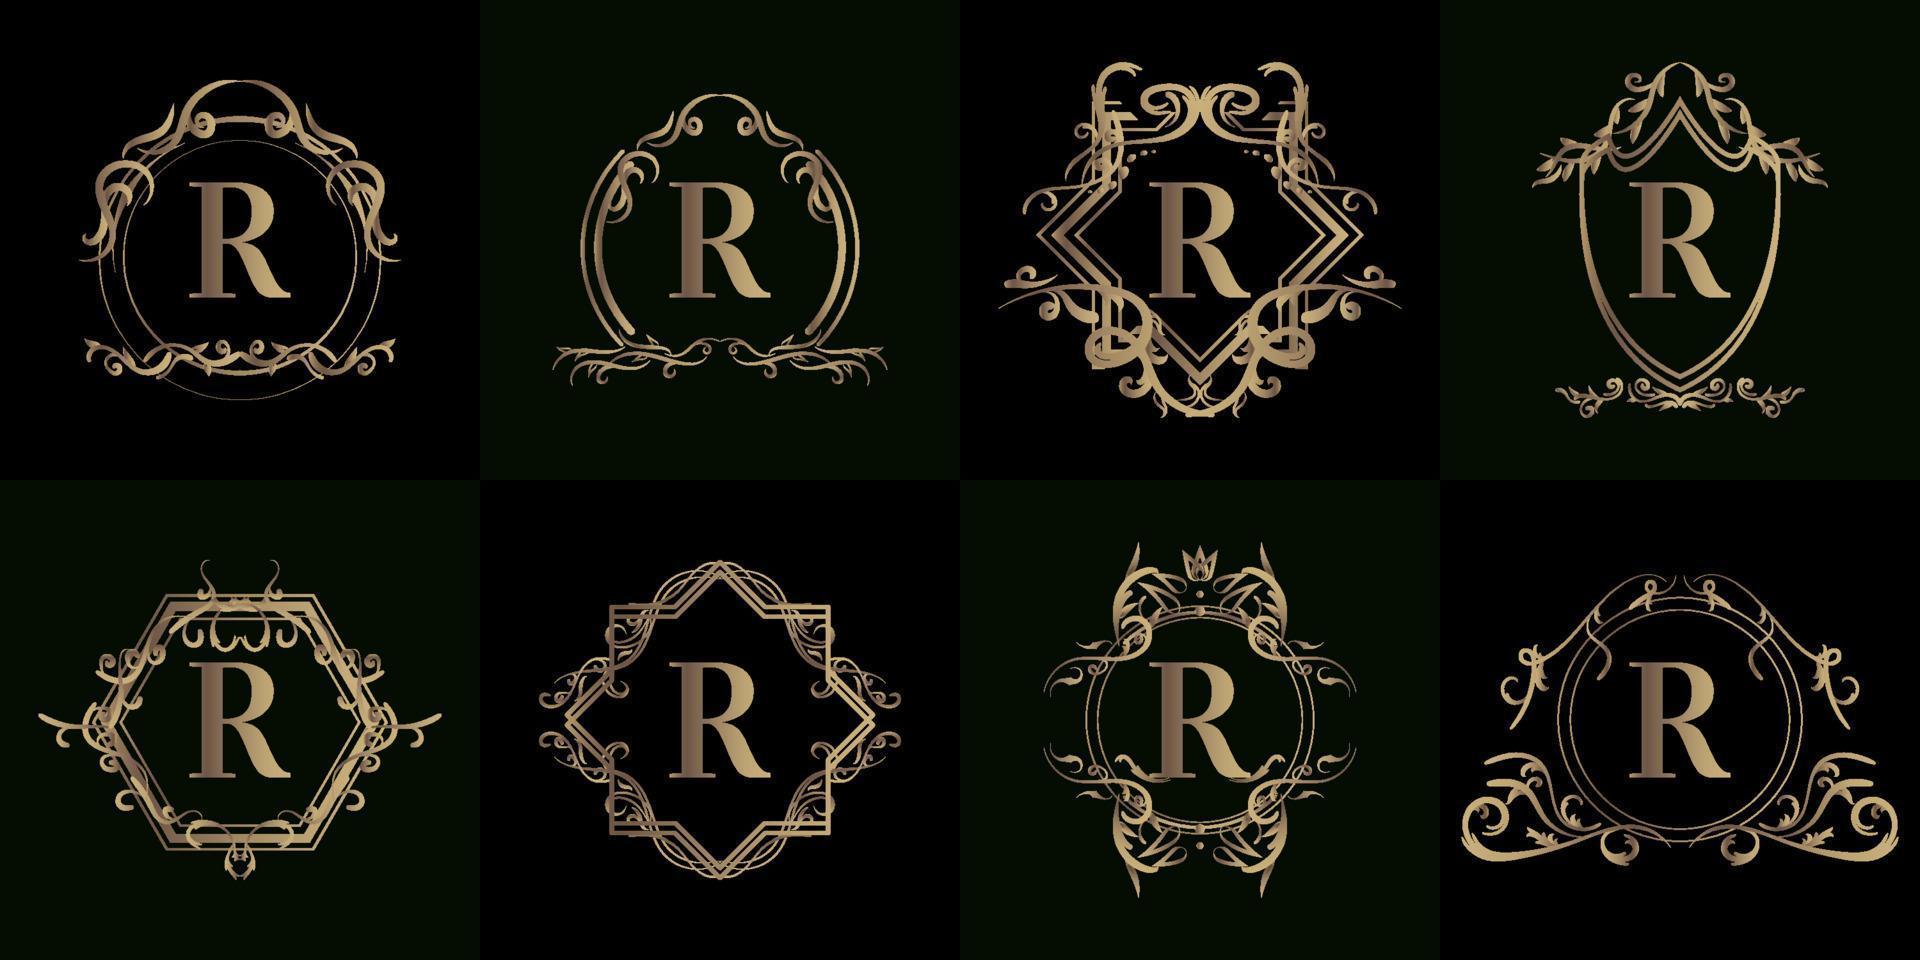 coleção de logotipo inicial r com ornamento de luxo ou moldura de flores vetor